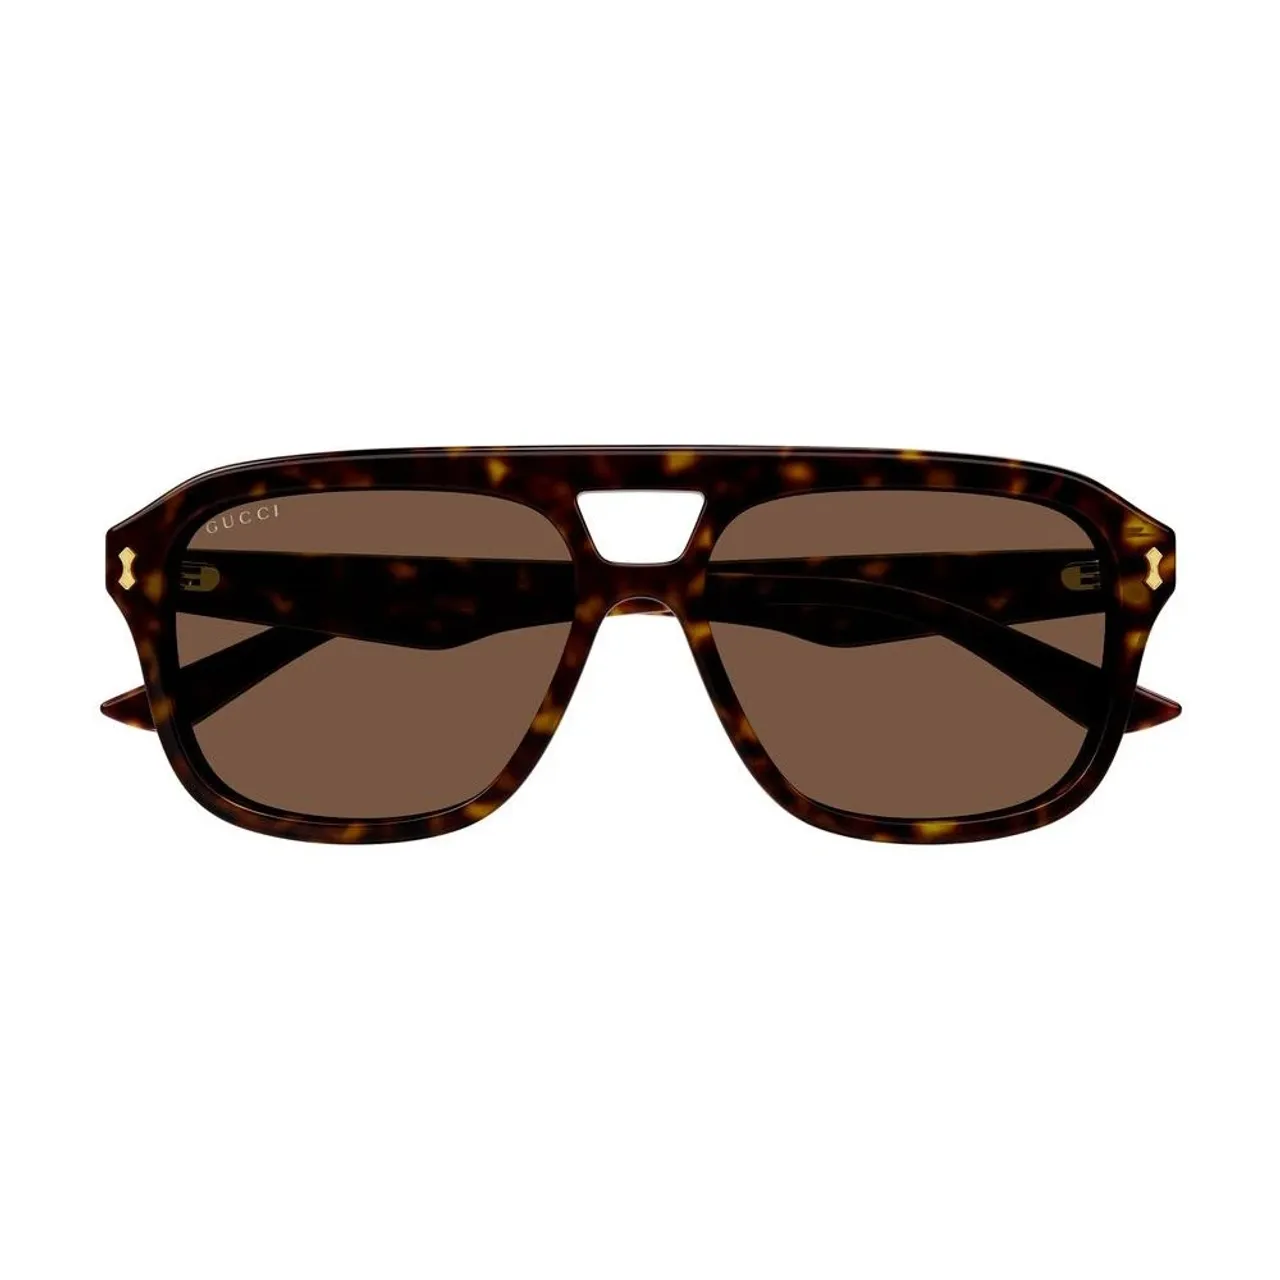 Havana/Braune Sonnenbrille Gucci